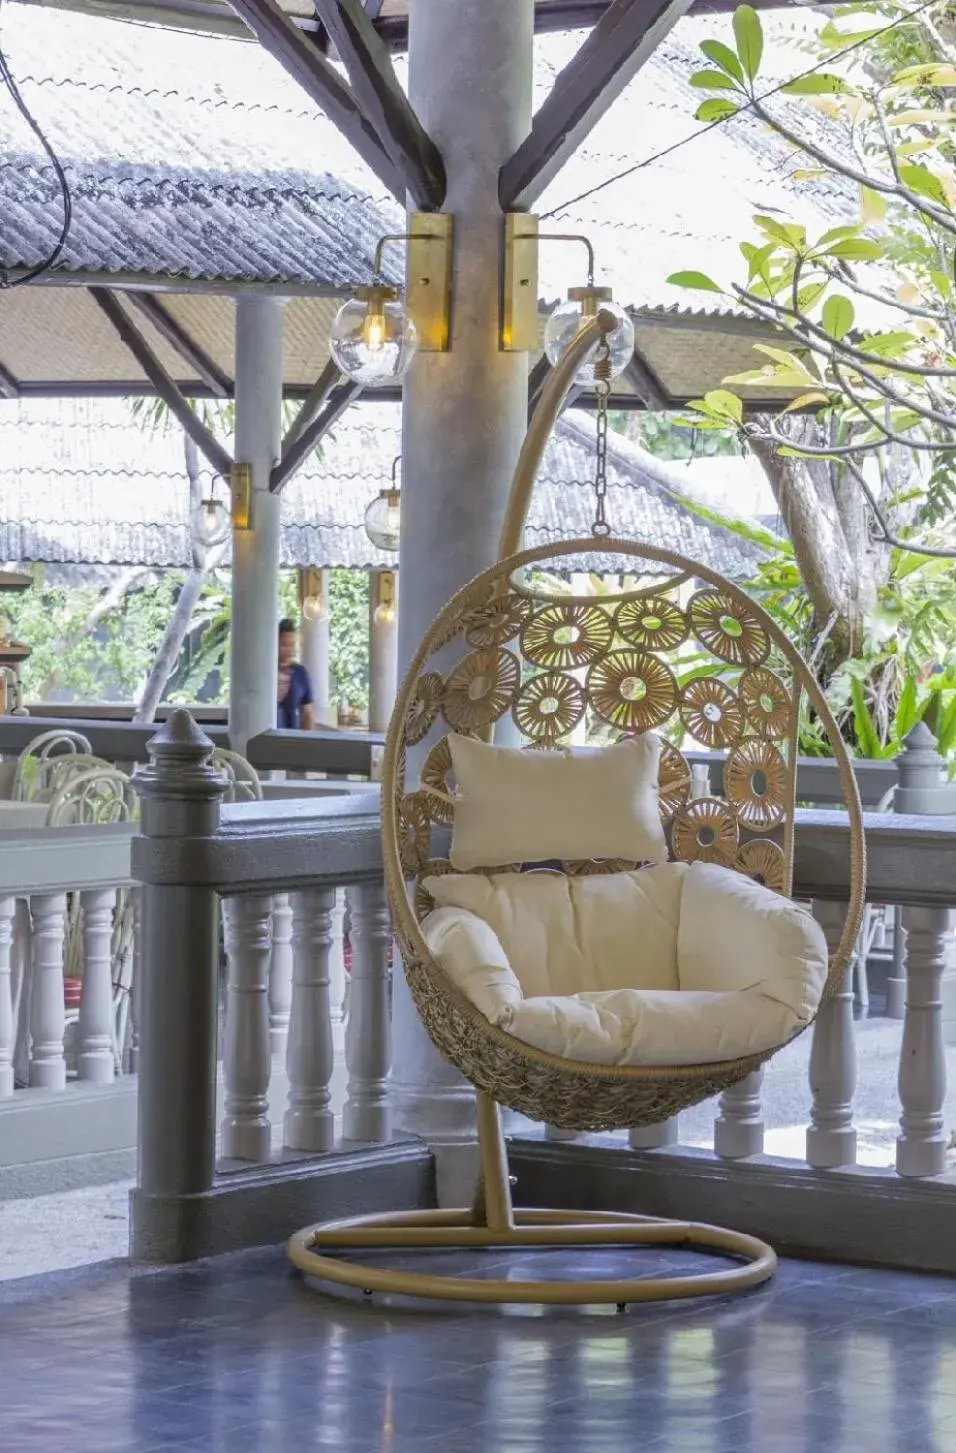 Lobby or reception in Let's Hyde Pattaya Resort & Villas - Pool Cabanas